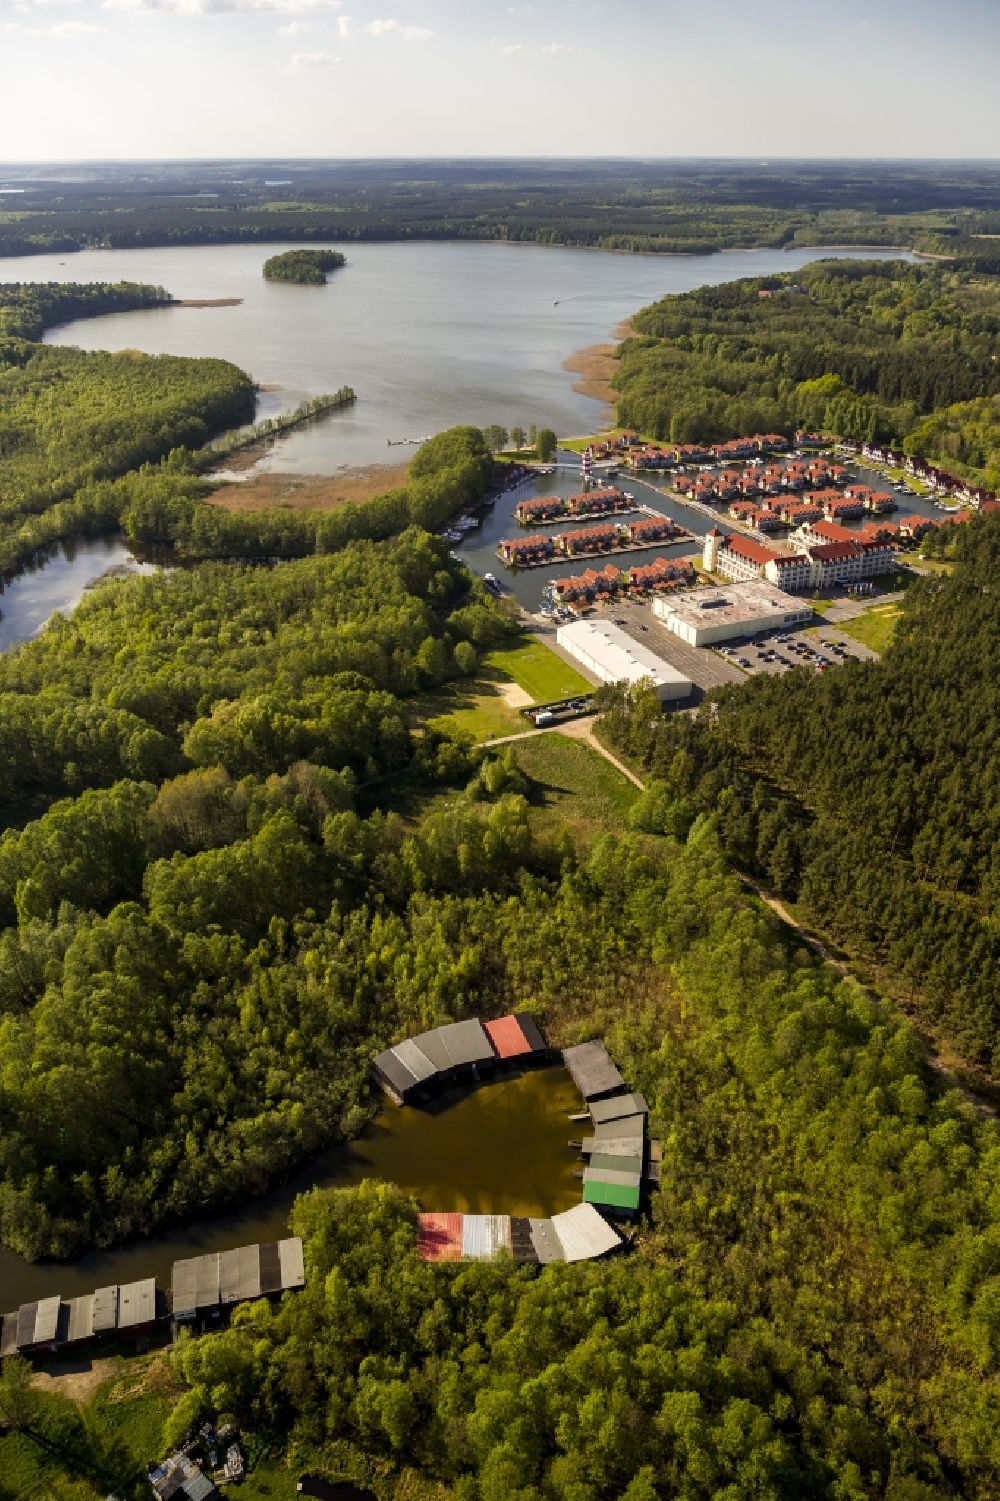 Luftaufnahme Rheinsberg - Ferienhäuser im Hafendorf am Rheinsberger See in der Nähe der Stadt Rheinsberg in Brandenburg